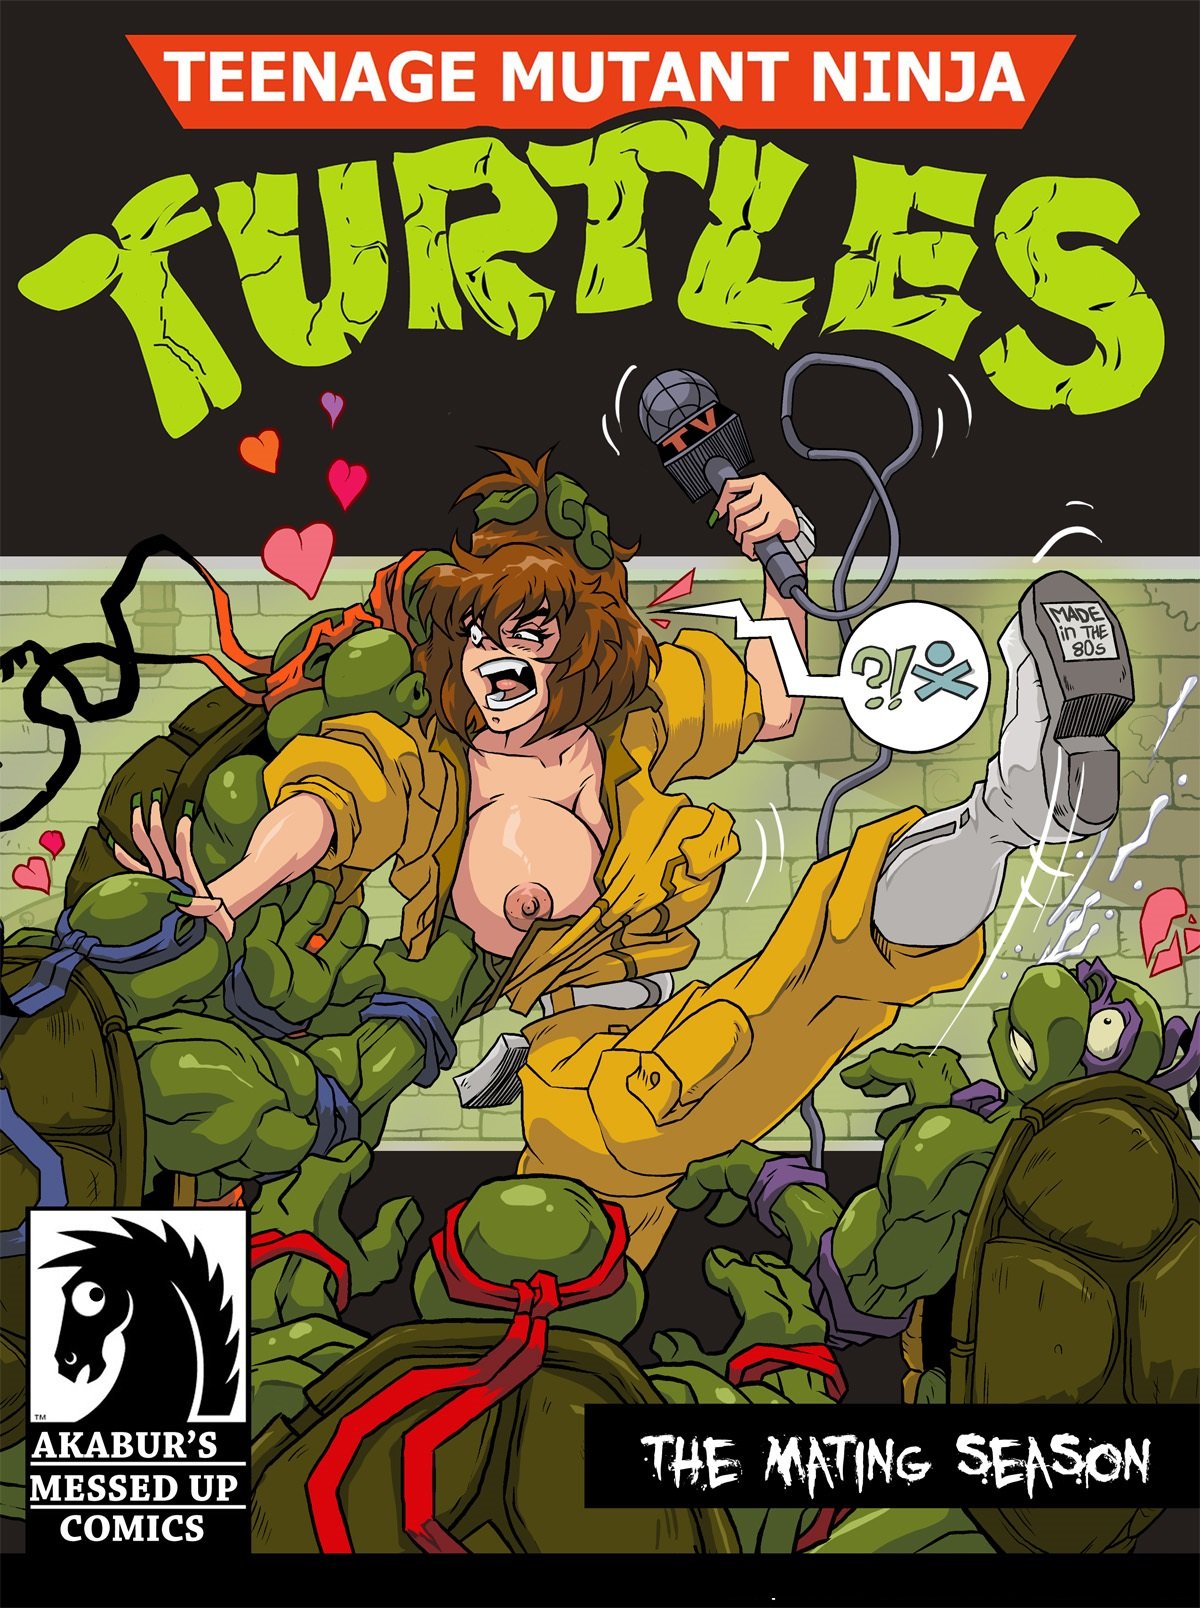 The Mating Season (Teenage Mutant Ninja Turtles) Akabur Porn Comic